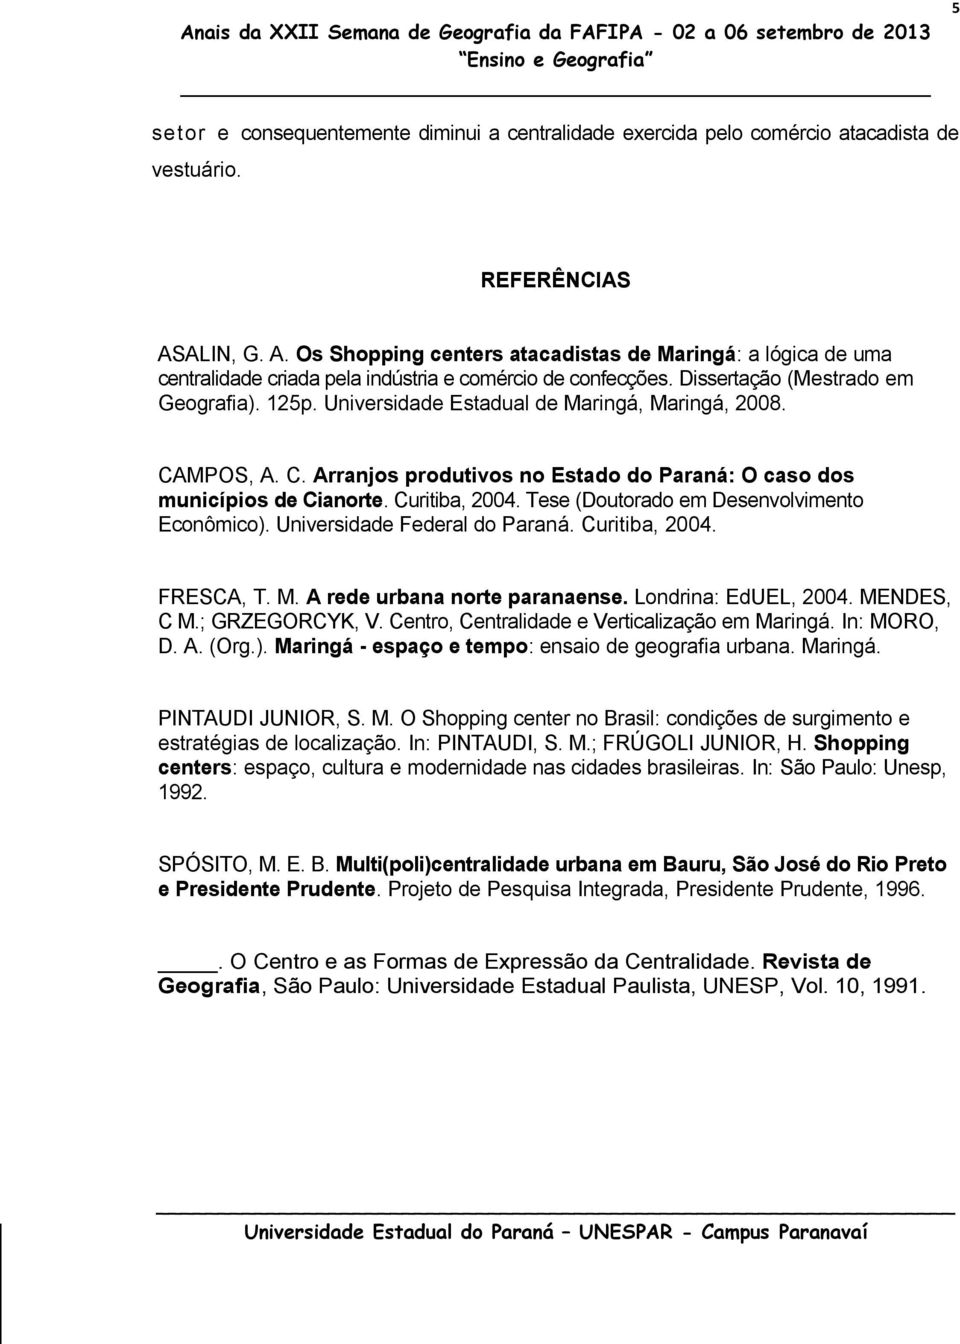 Universidade Estadual de Maringá, Maringá, 2008. CAMPOS, A. C. Arranjos produtivos no Estado do Paraná: O caso dos municípios de Cianorte. Curitiba, 2004.